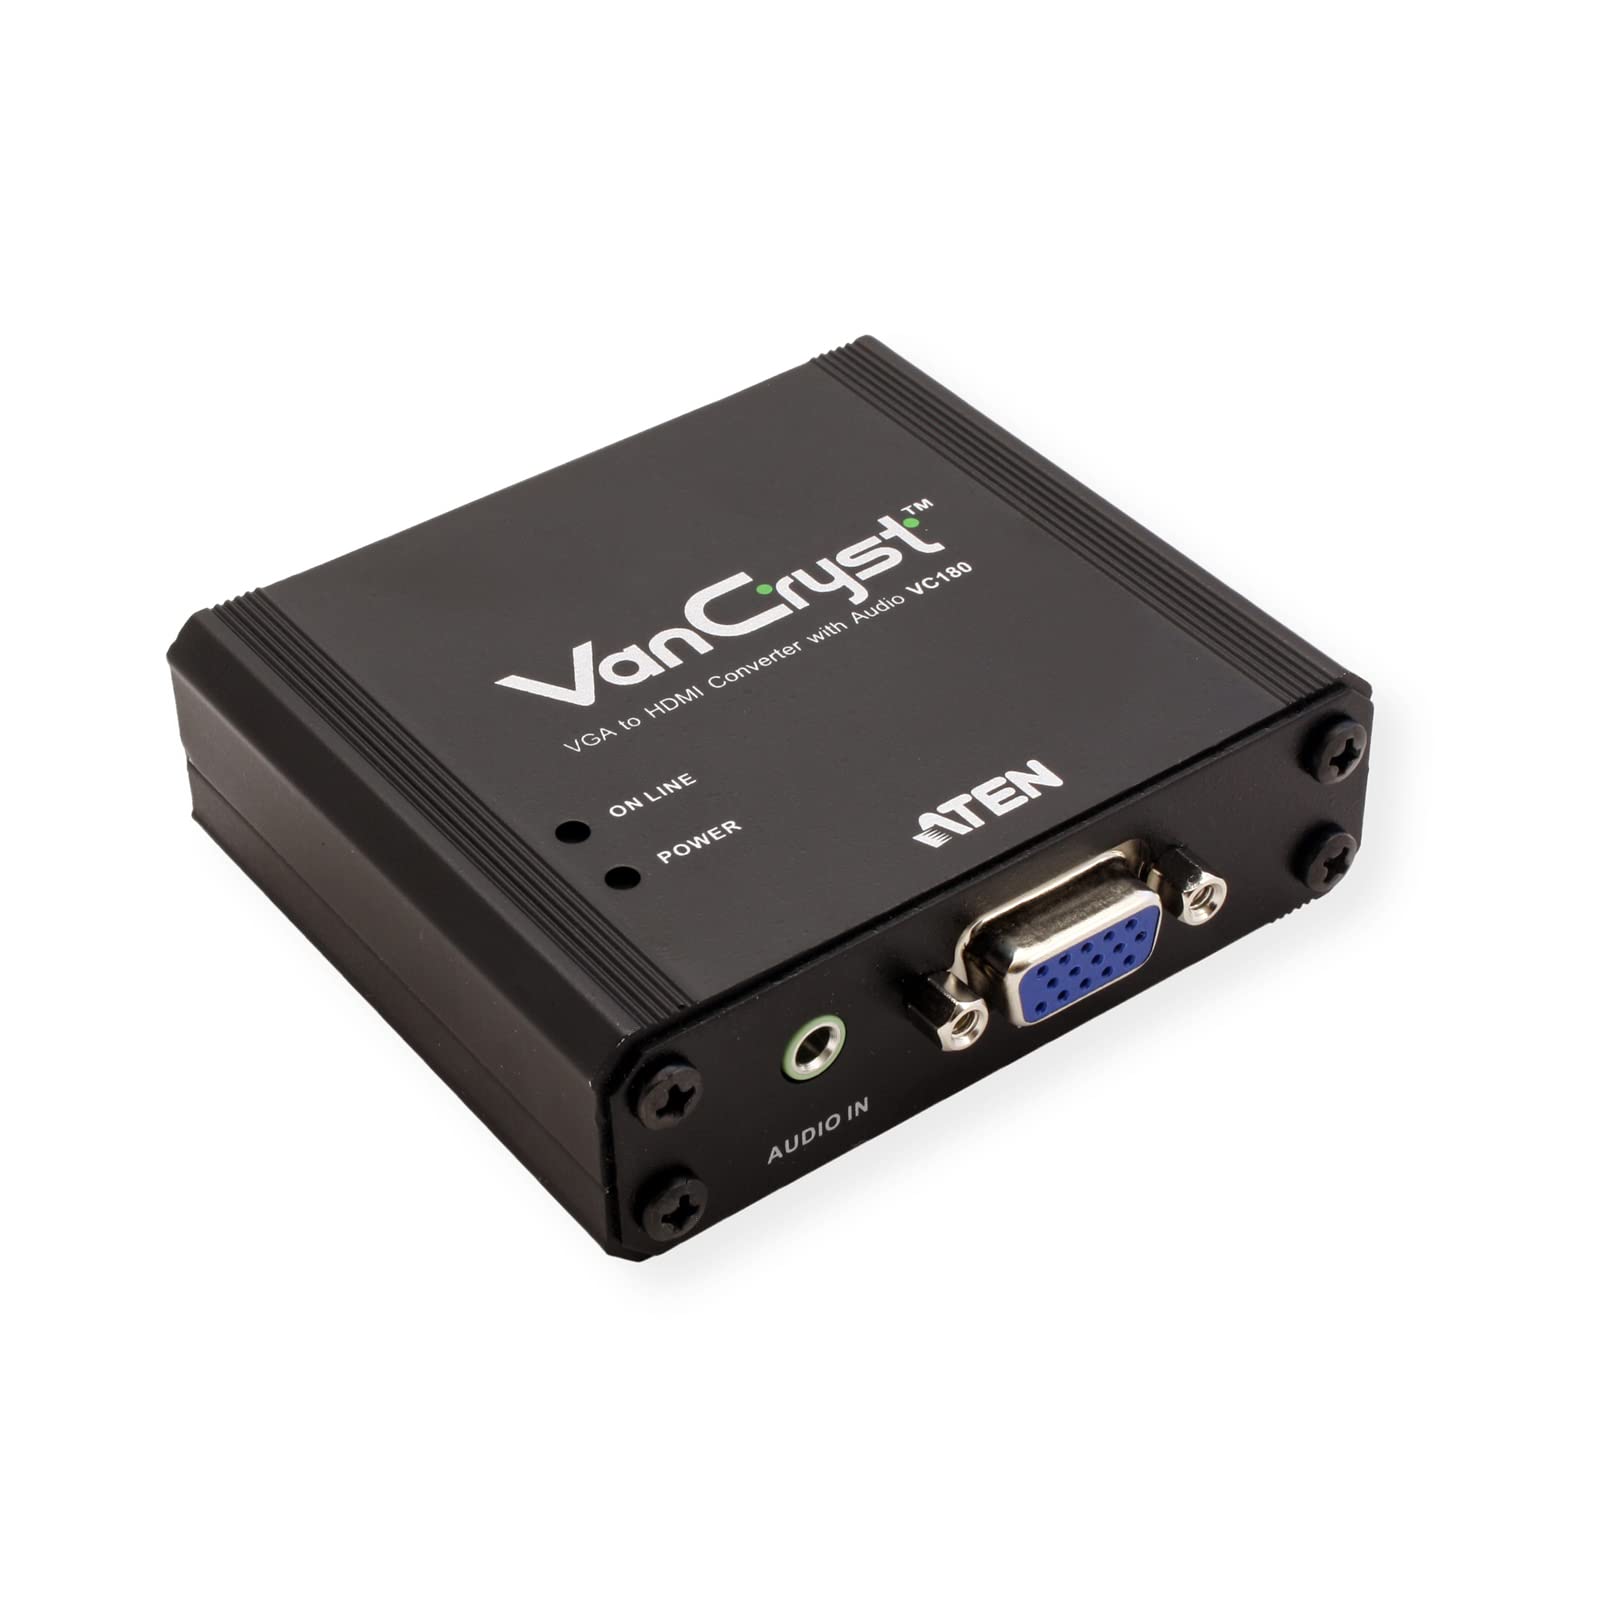 VC180 VGA to HDMI Converter